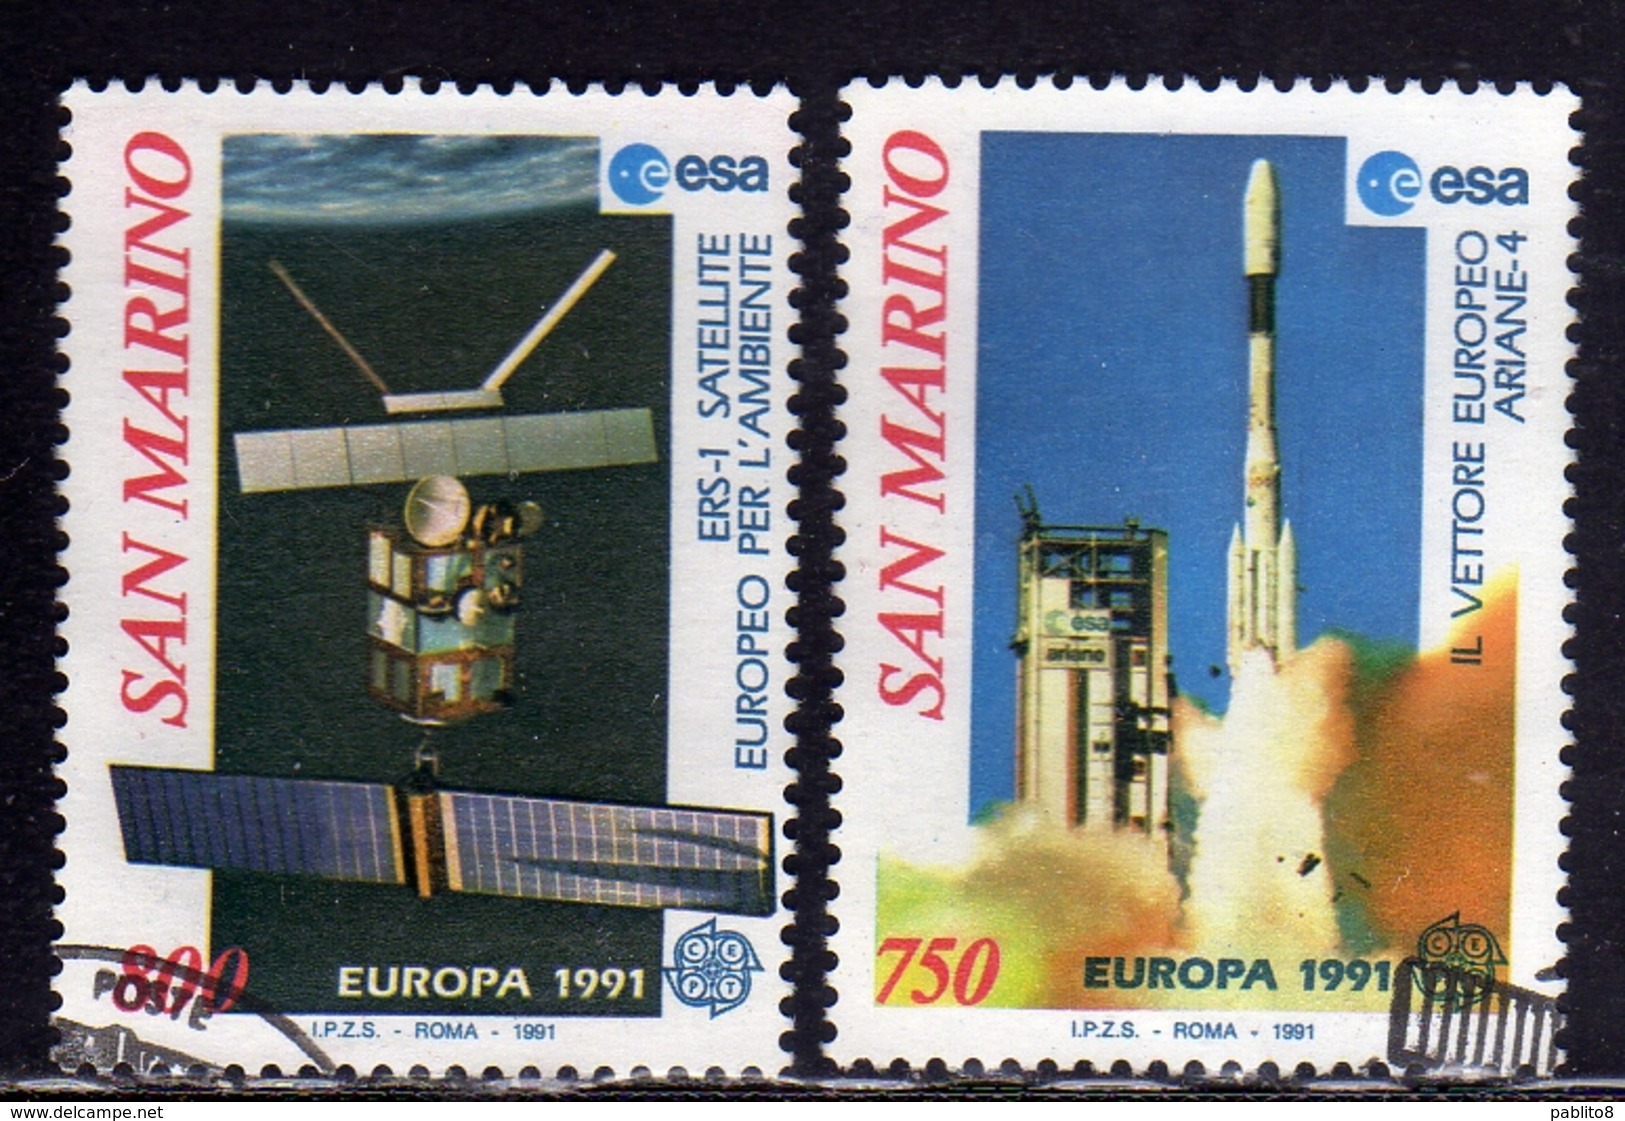 REPUBBLICA DI SAN MARINO 1991 EUROPA UNITA CEPT SERIE COMPLETA COMPLETE SET USATA USED OBLITERE' - Used Stamps